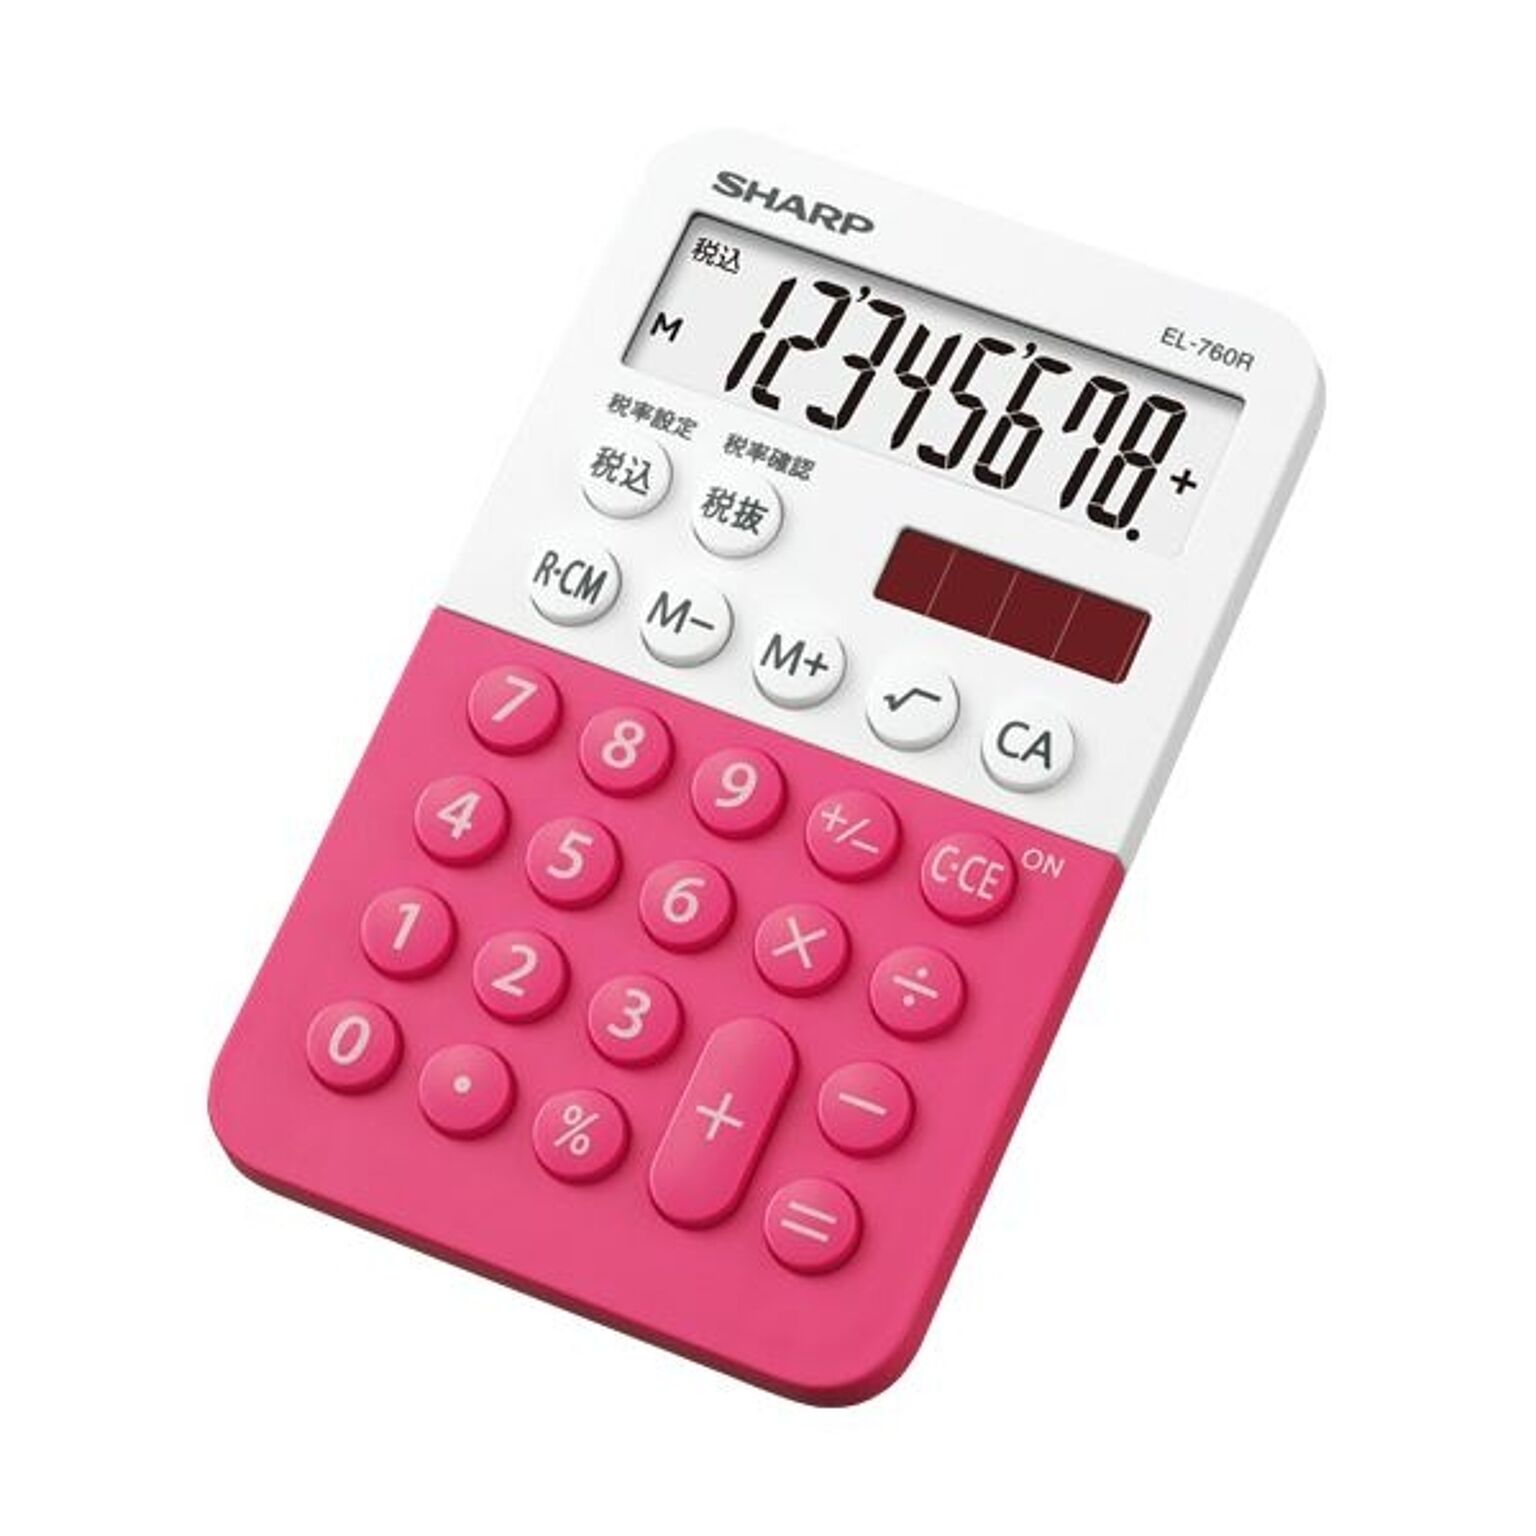 (まとめ) シャープ カラー・デザイン電卓 8桁ミニミニナイスサイズ ピンク系 EL-760R-PX 1台 【×10セット】